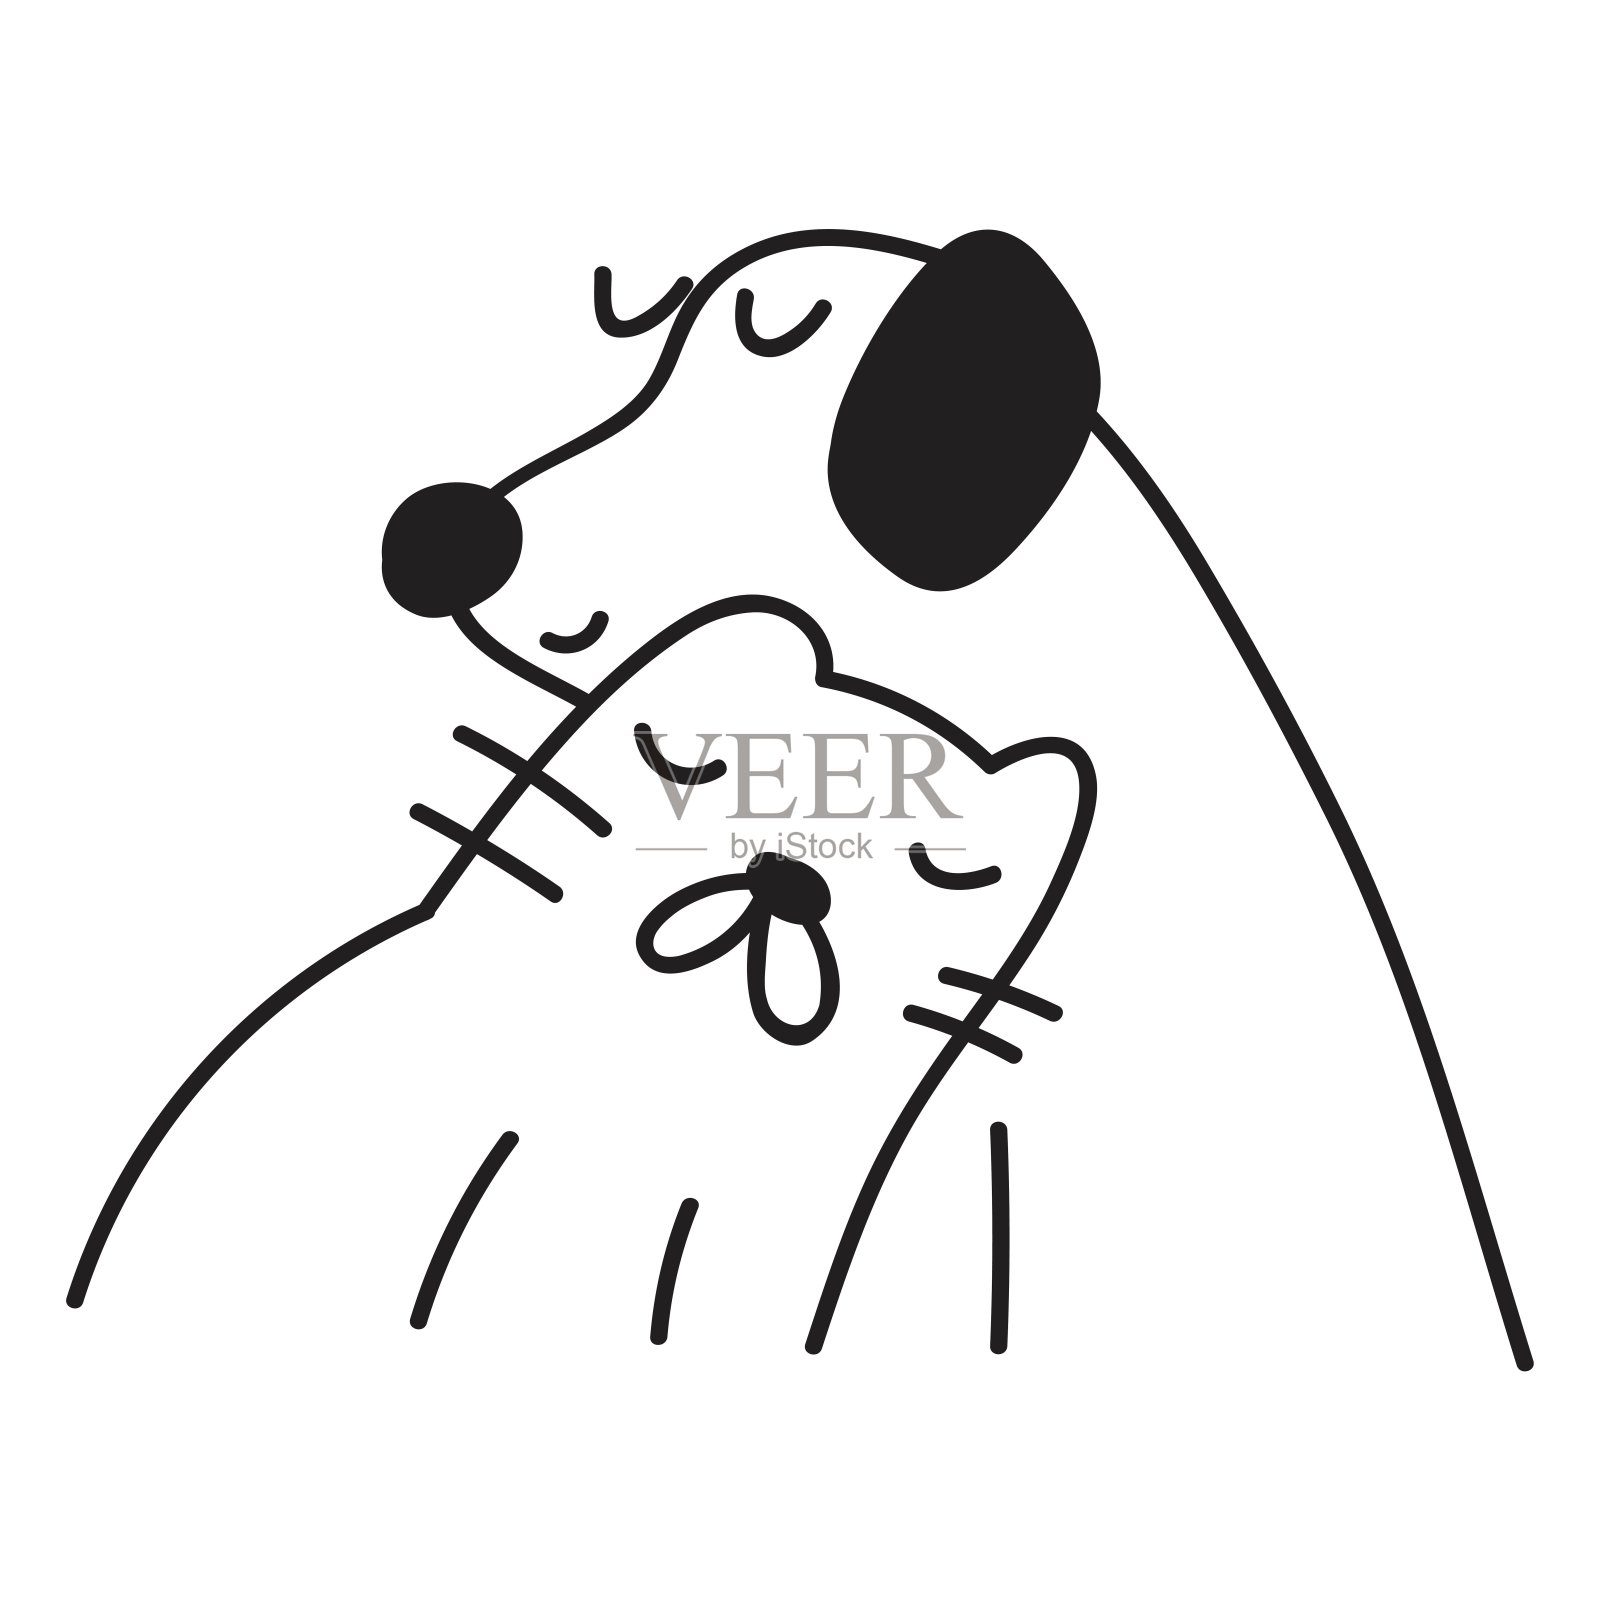 愉快的猫和狗友谊 最好的朋友的动画片例证 向量例证. 插画 包括有 敬慕, 哺乳动物, 喜悦, 可笑, 艺术 - 68796146